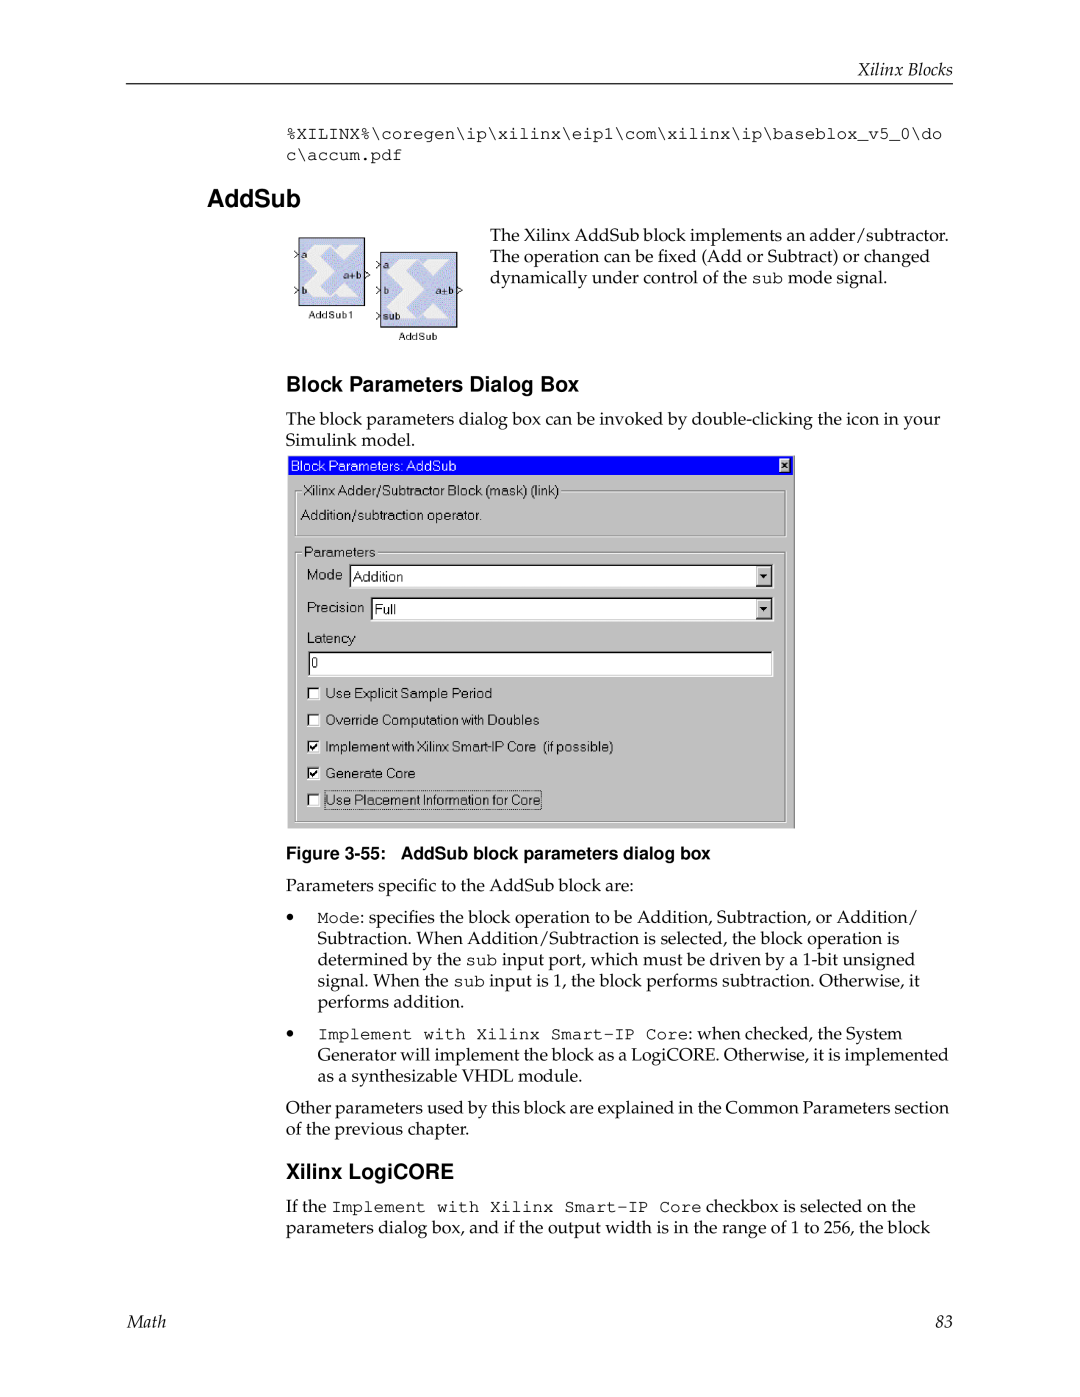 Xilinx V2.1 manual AddSub, Block Parameters Dialog Box, Xilinx LogiCORE, Xilinx Blocks, Math 